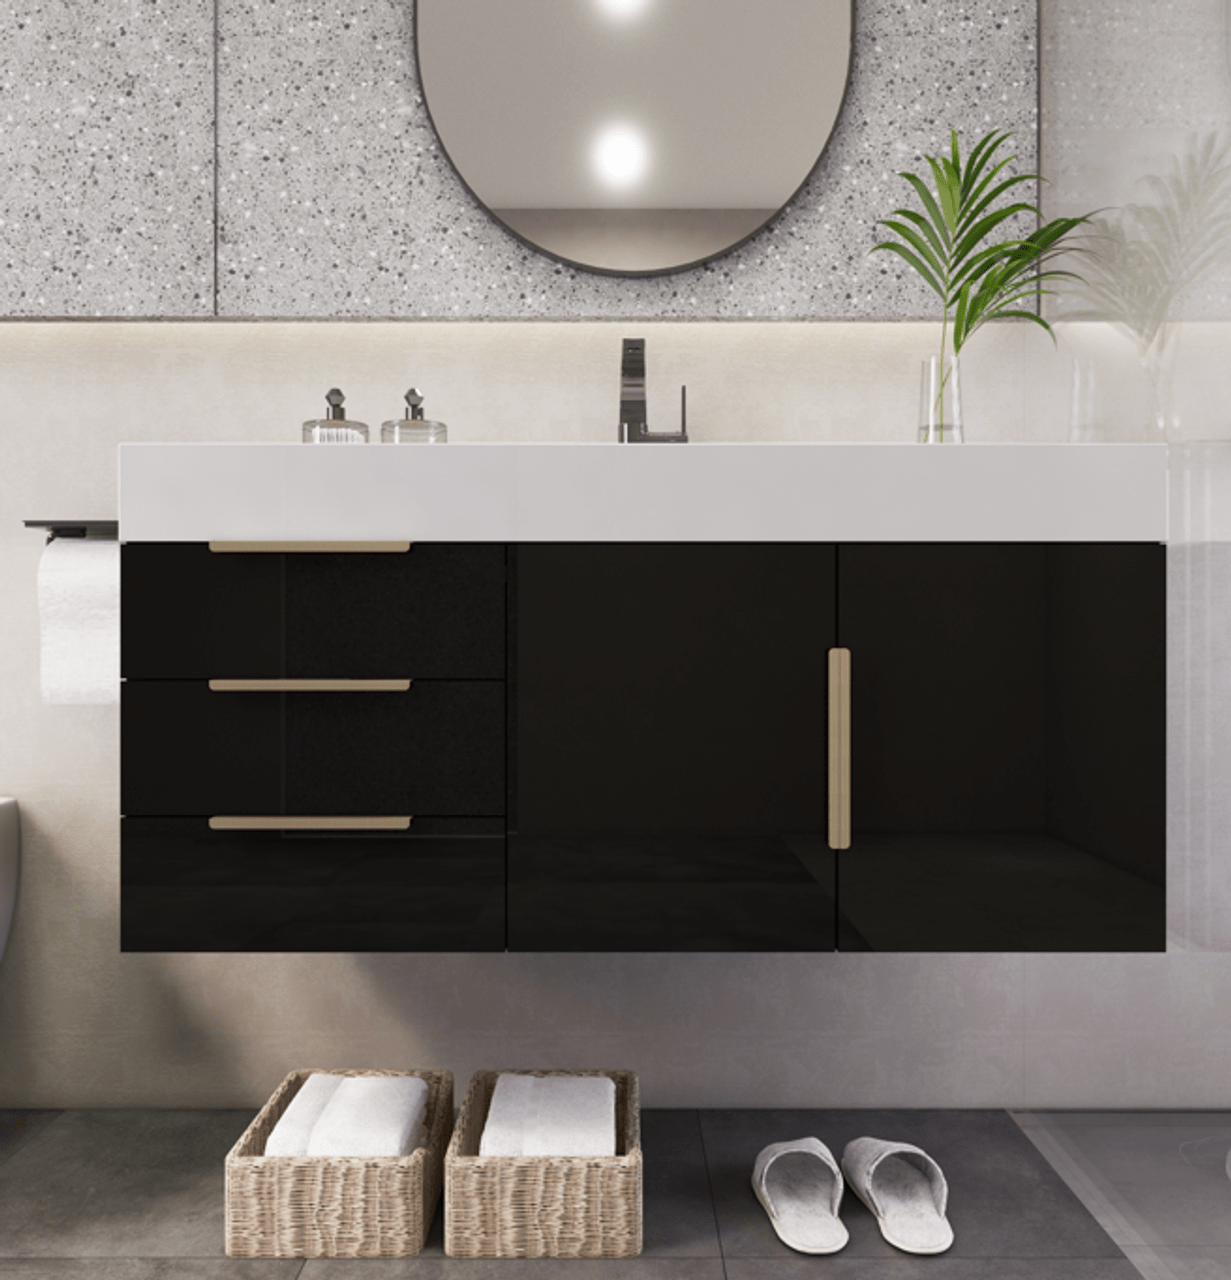 Noble 42" Wall Mount Luxury Bathroom Vanity with Acrylic Sink